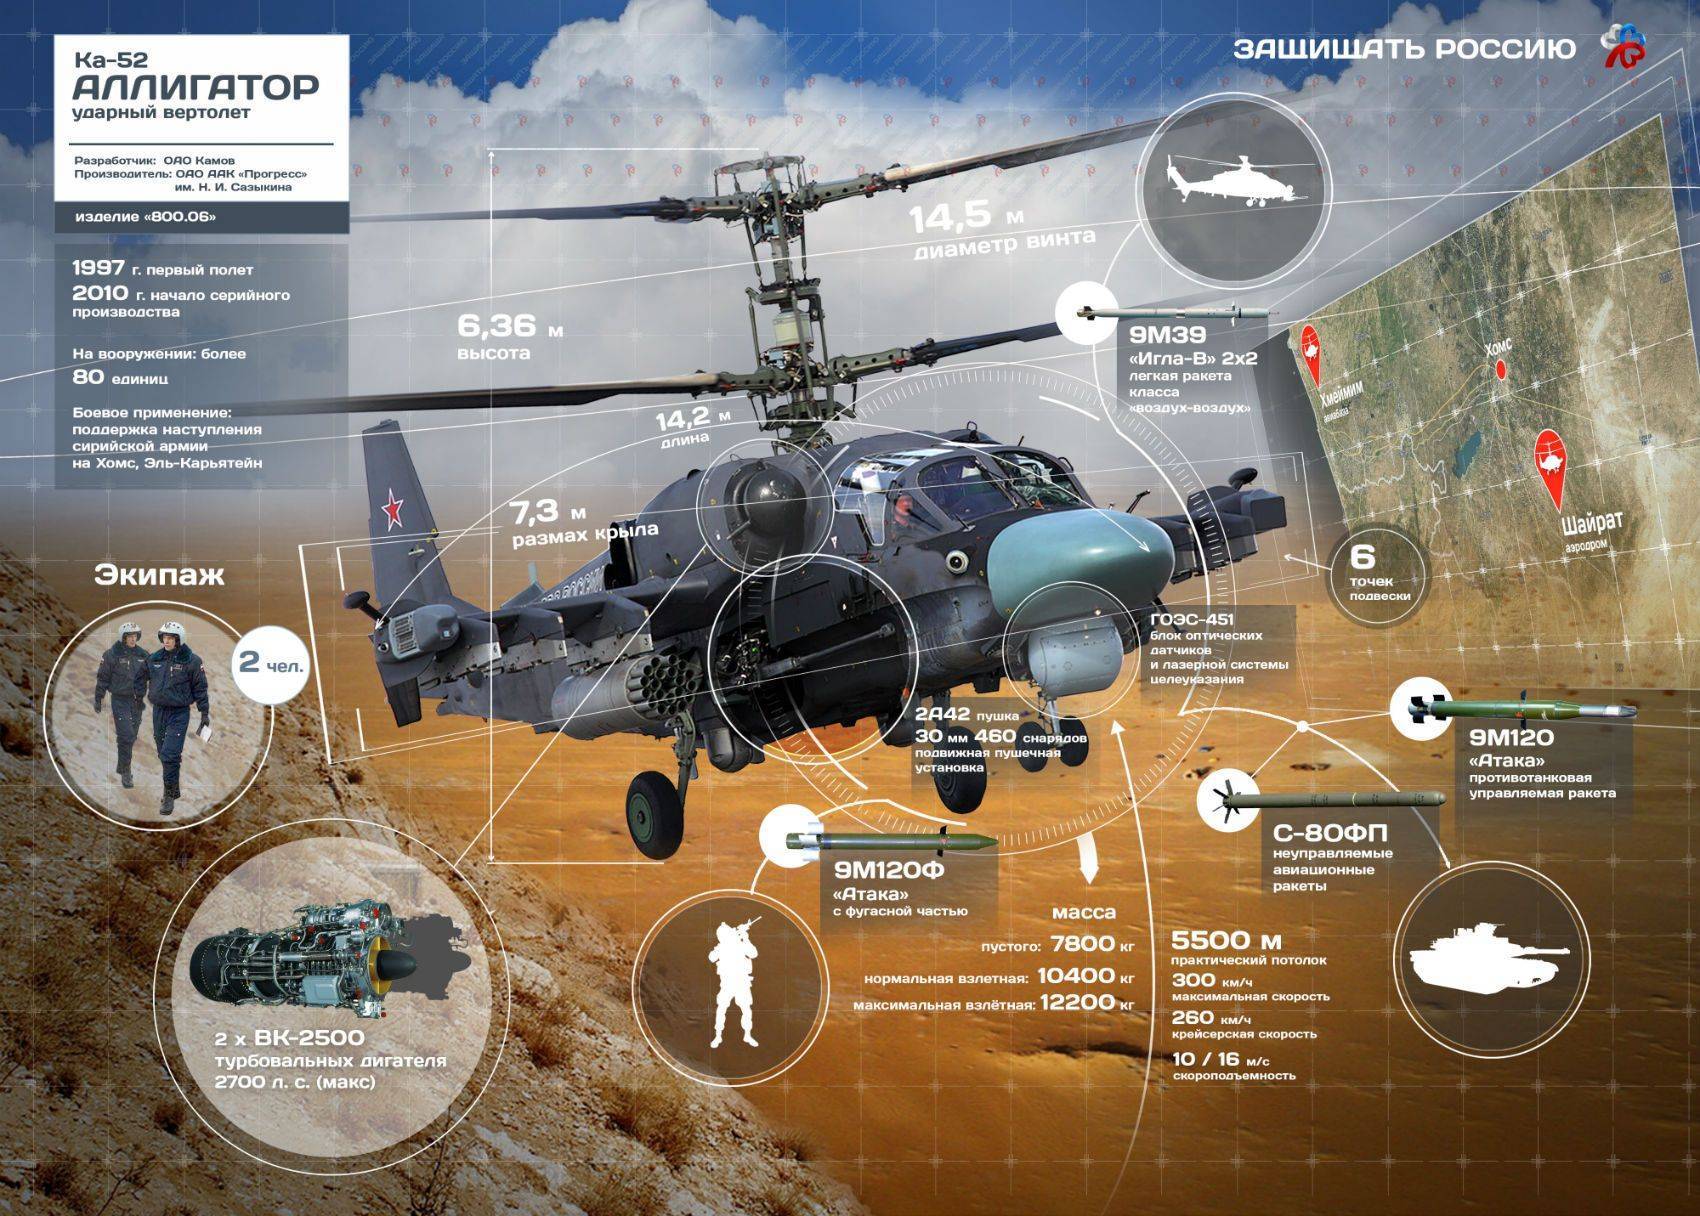 Вертолет камов ка-52к — российский боевой разведывательно-ударный вертолет палубного базирования